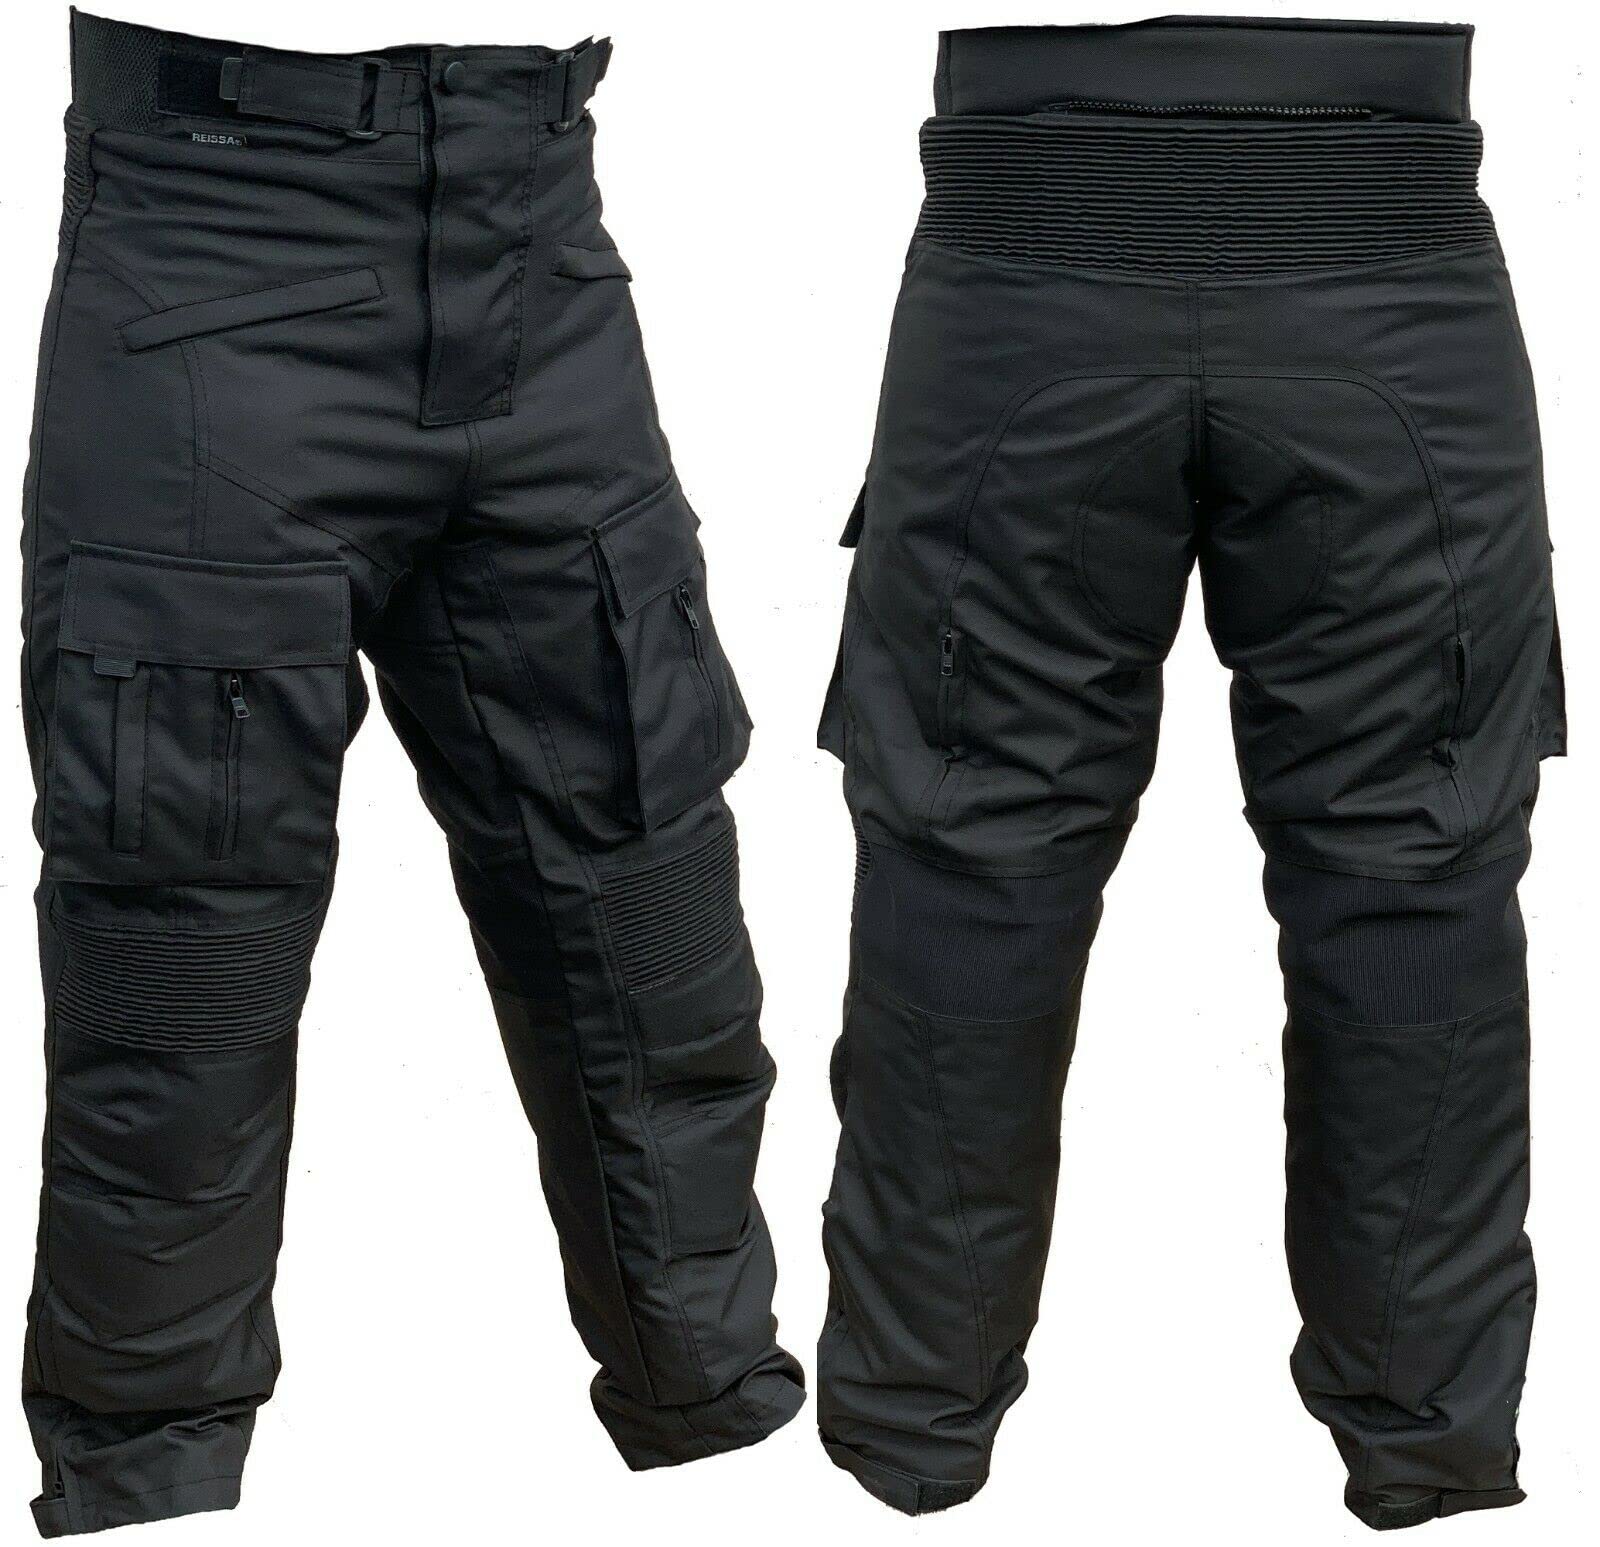 L&J Motorradhose mit herausnehmbaren Protektoren an Hüfte und Knie Herren Textil Motorrad Hose (M) von L&J